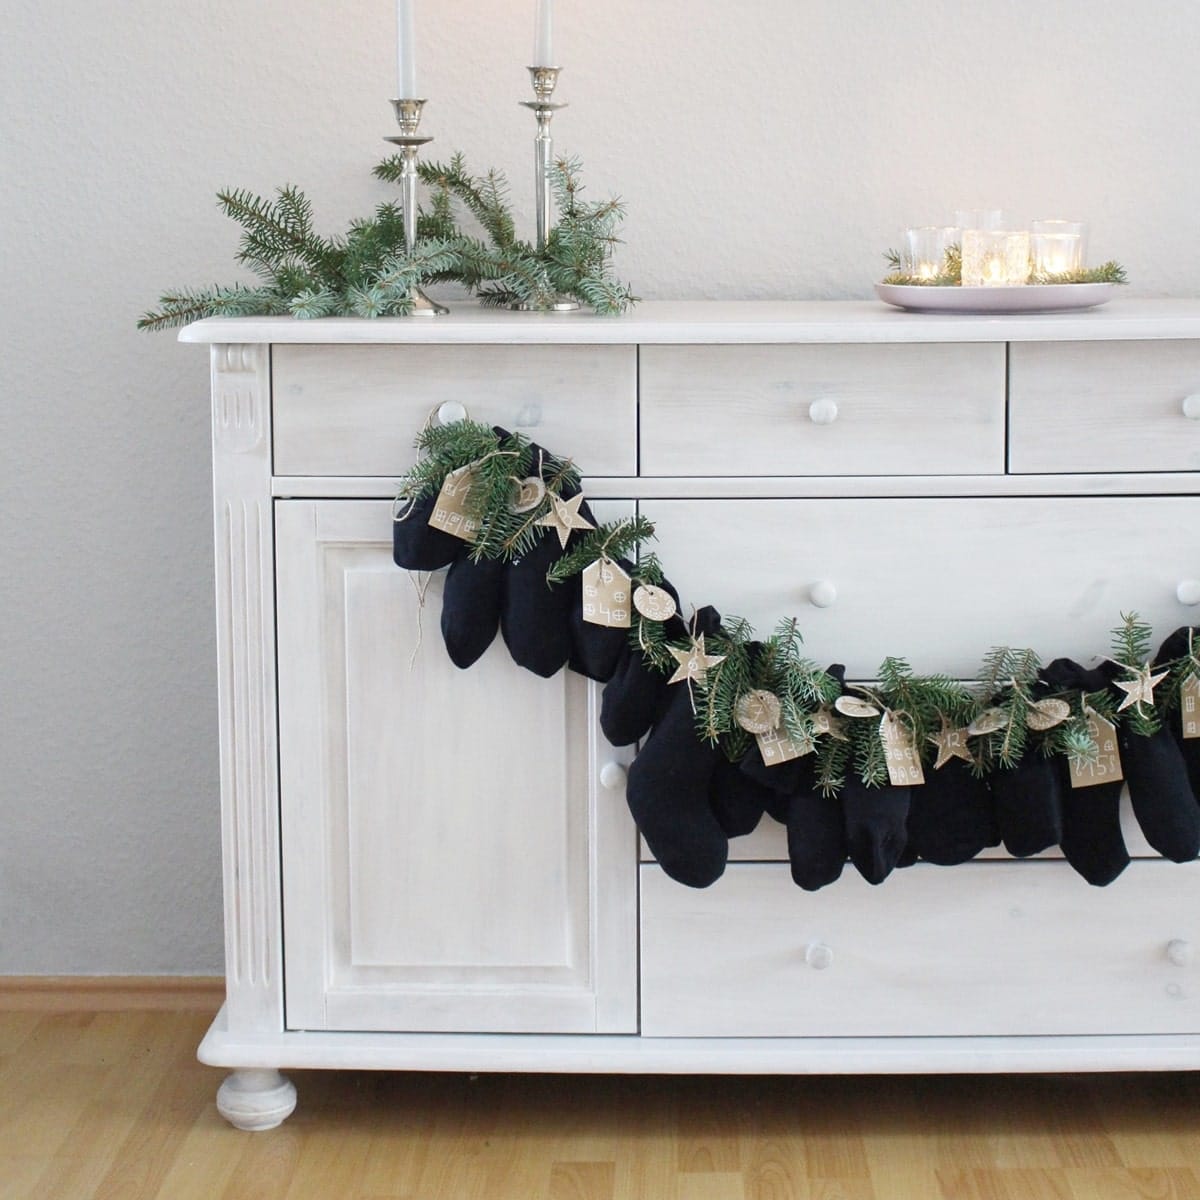 DIY Adventskalender aus Socken basteln | Tinkerhome - einfache DIYs für Zuhause